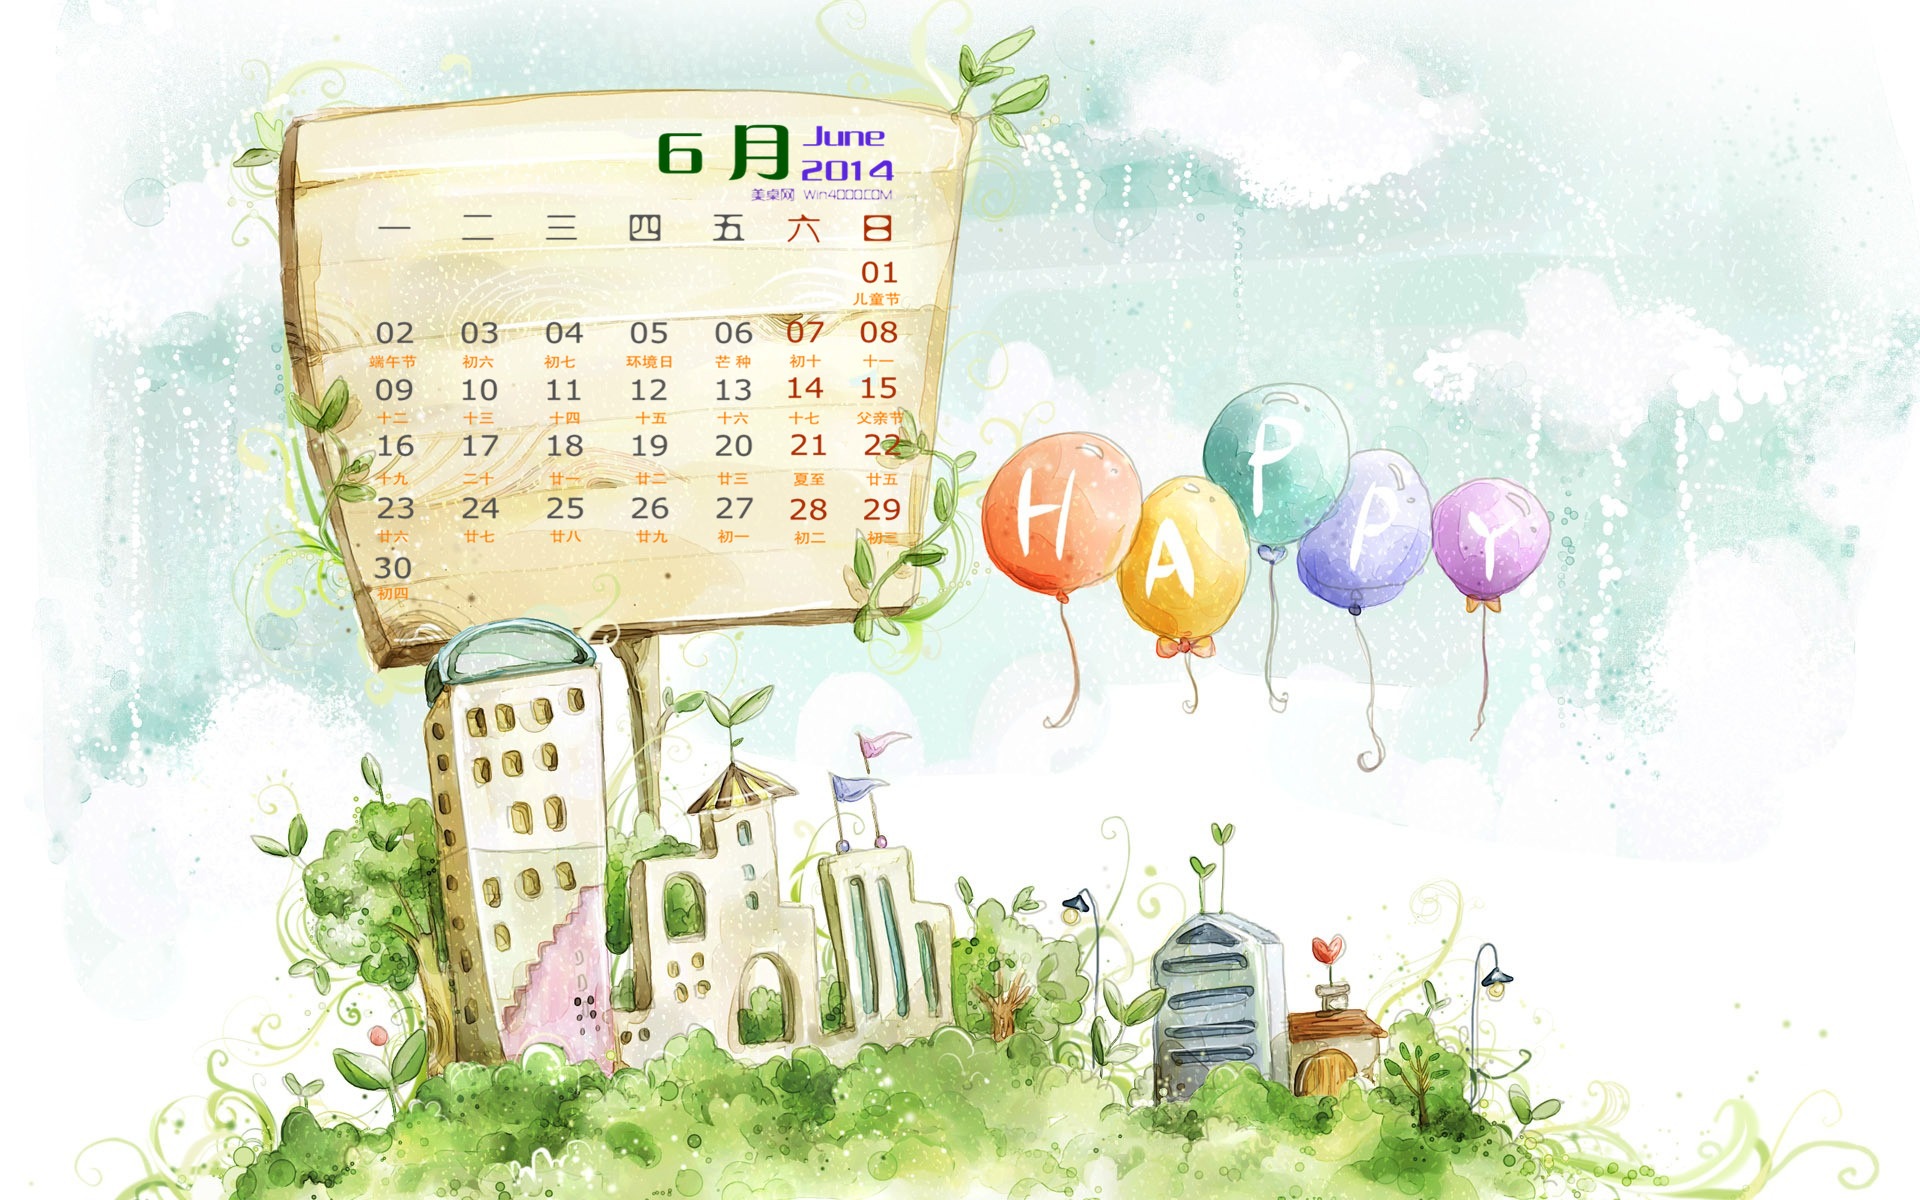 June 2014 calendar wallpaper (1) #11 - 1920x1200